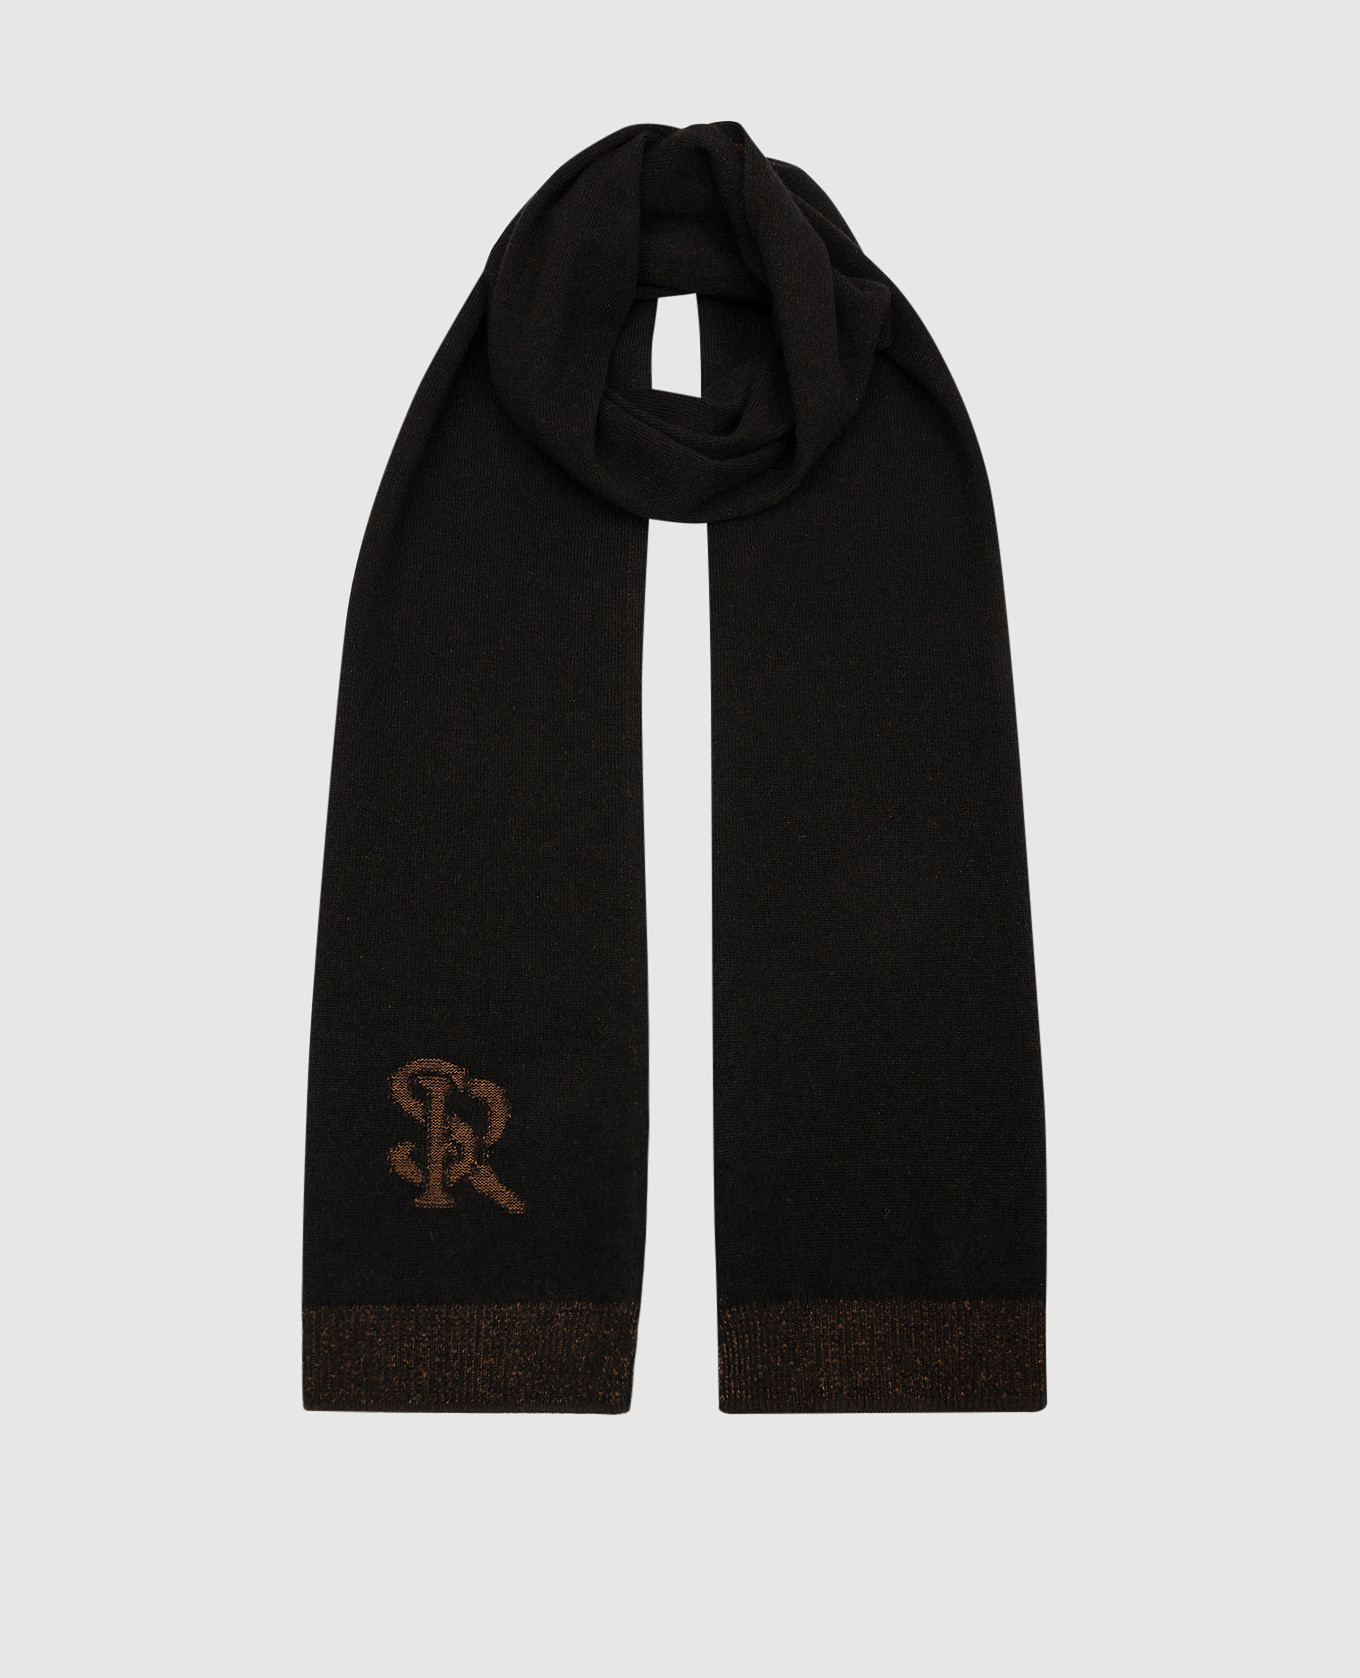 Коричневый шарф из кашемира и шелка с узором логотипа.